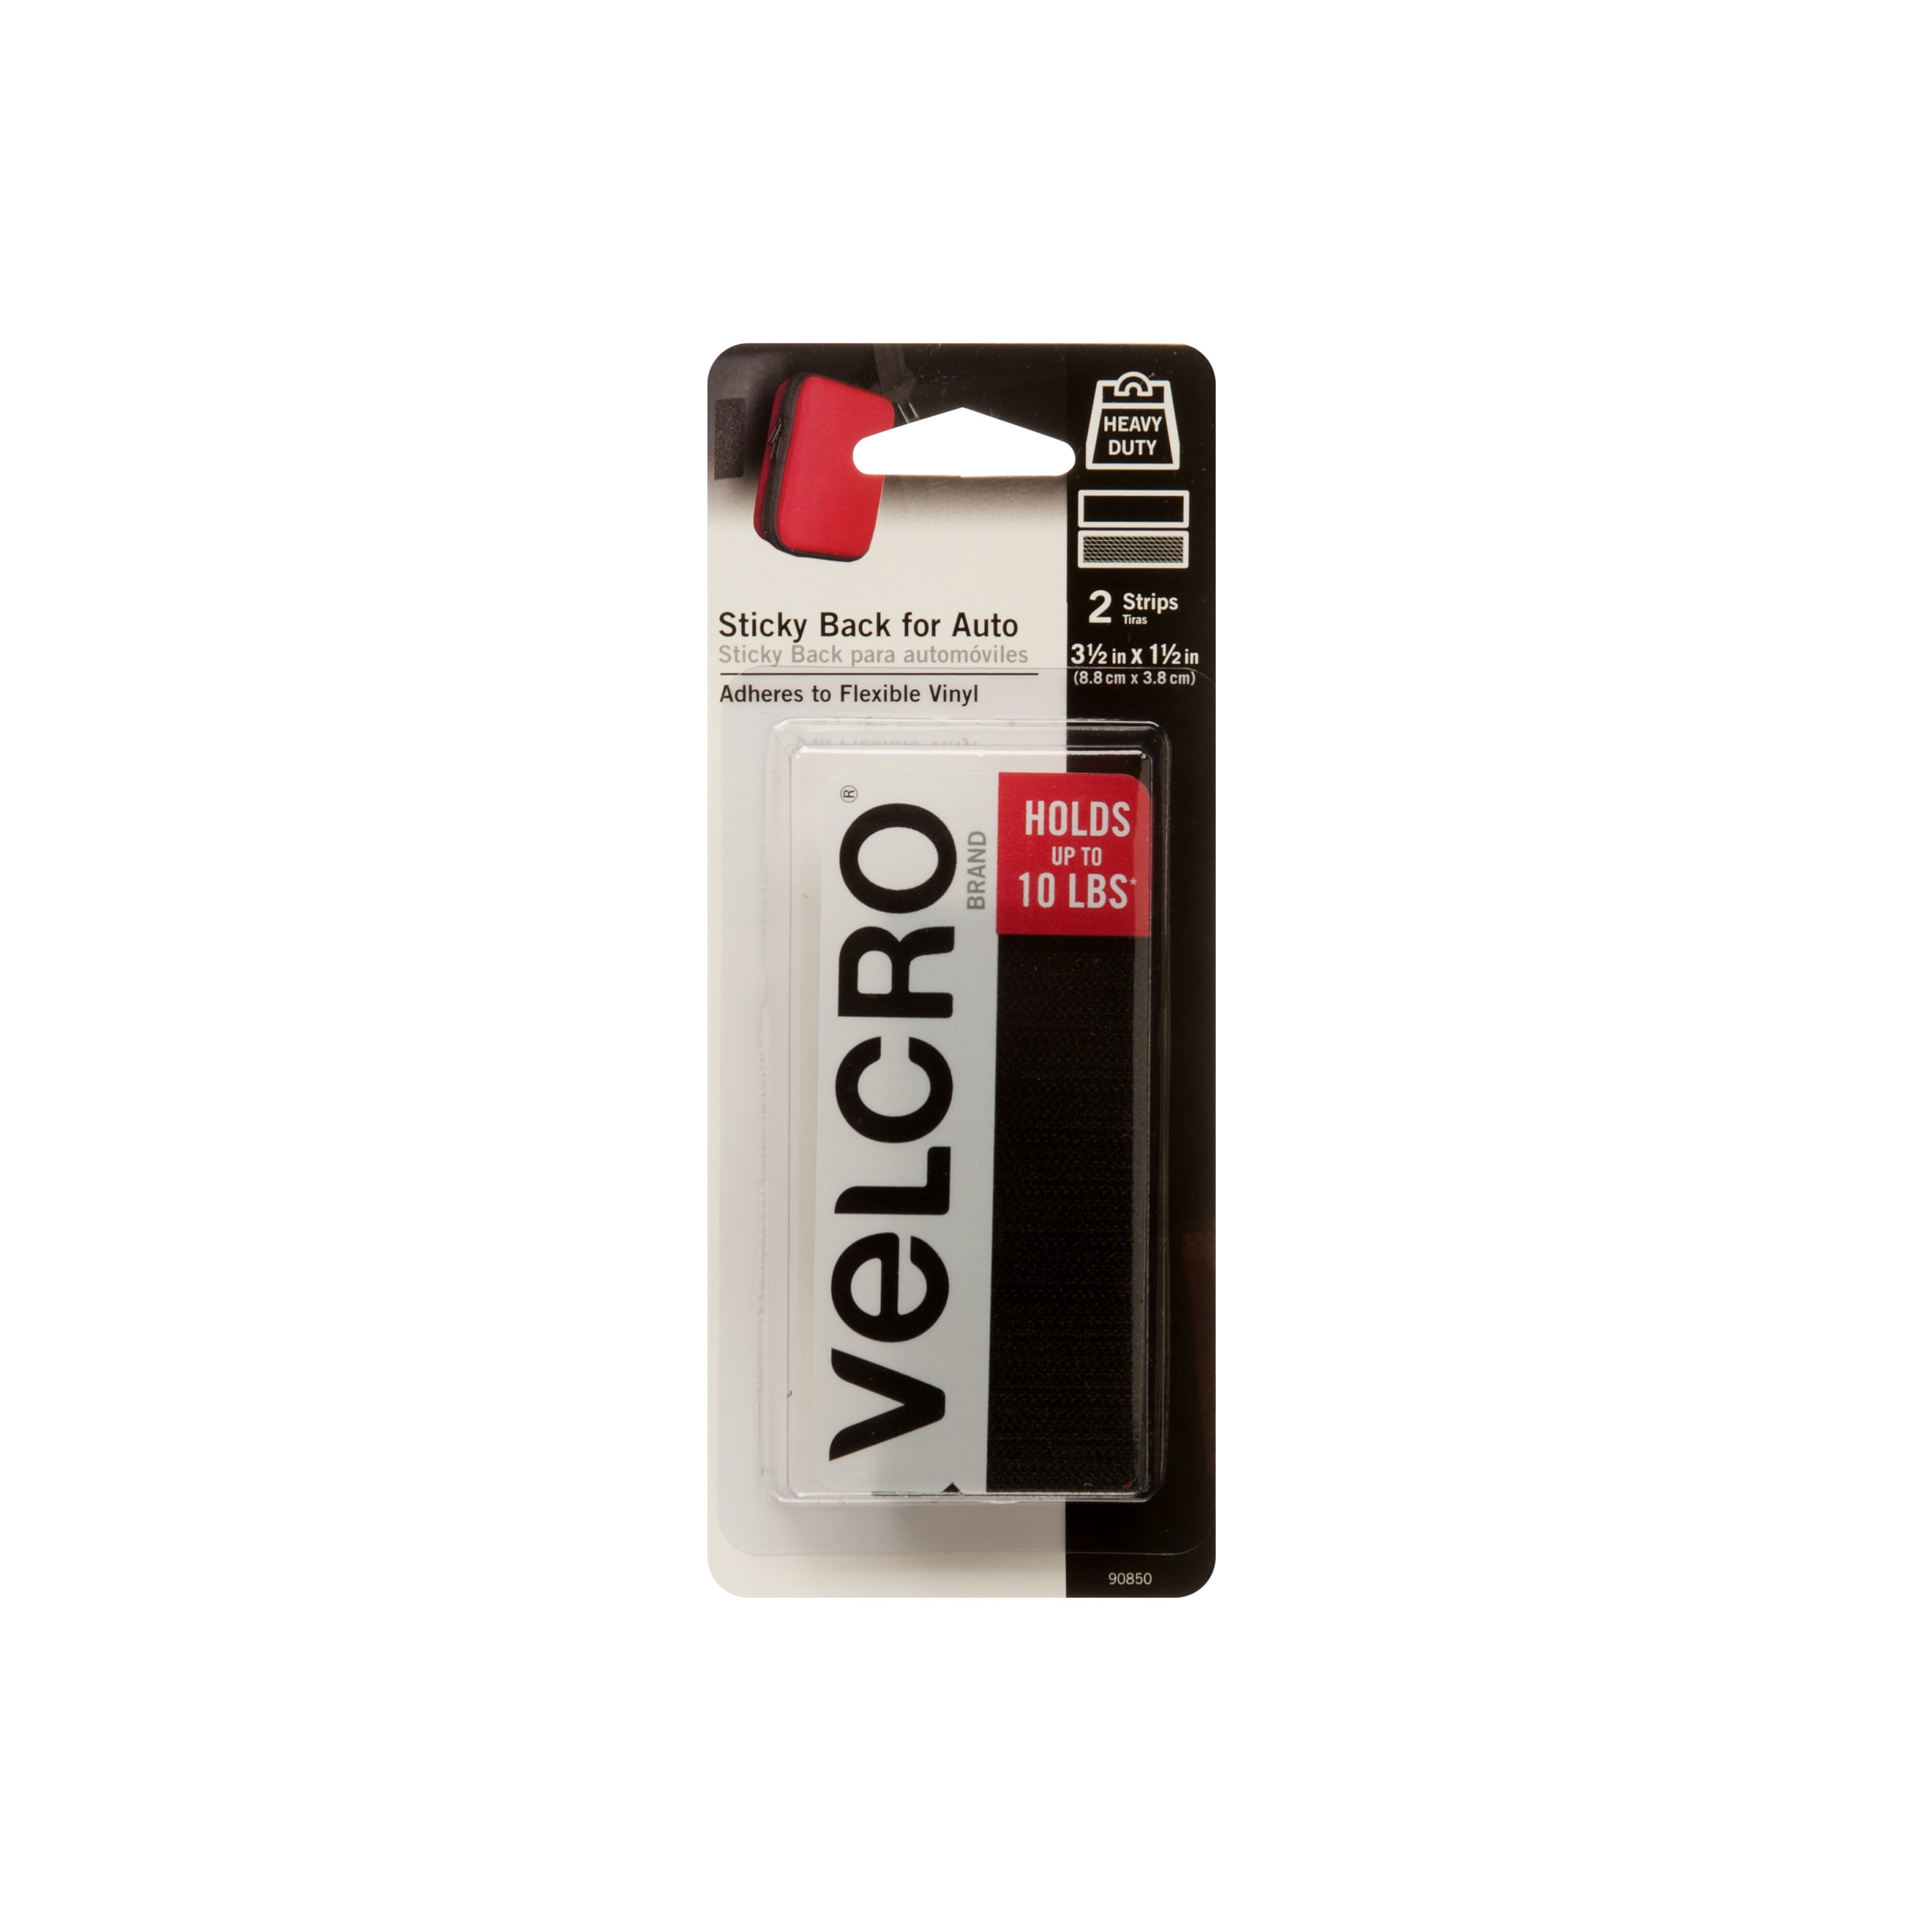 VEK 90086 VELCRO BRAND Sticky Back Tape Vek90086 for sale online 